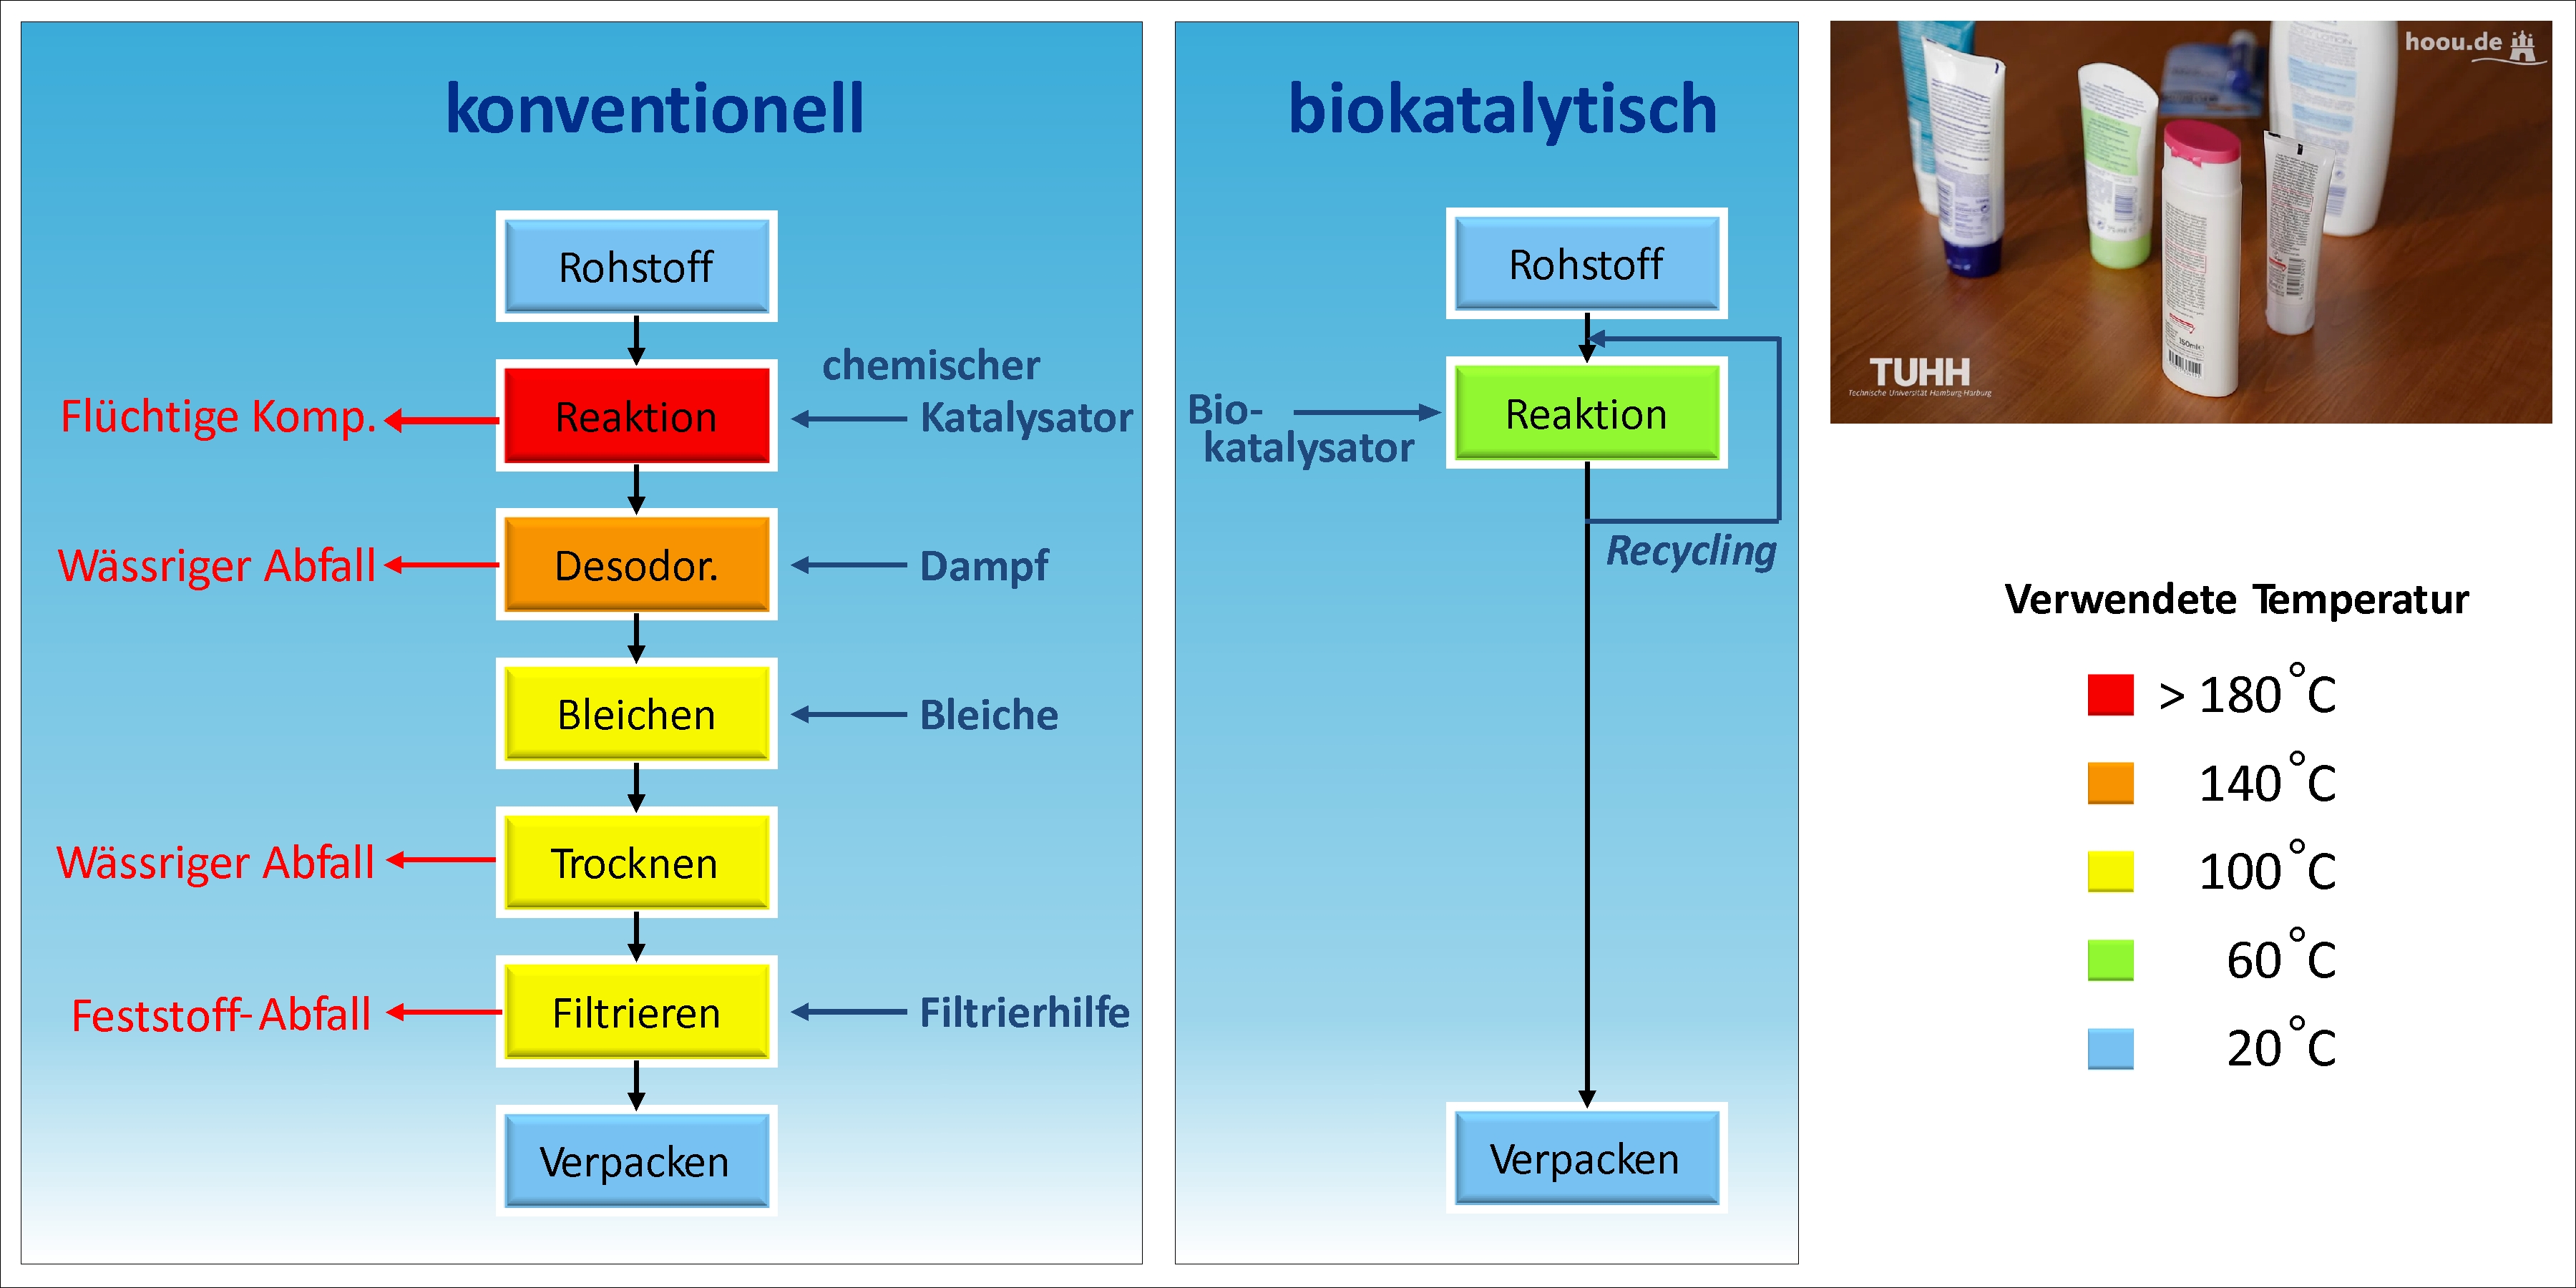 Vergleich des konventionellen (chemokatalytischen) und biokatalytischen Herstellungsverfahrens.